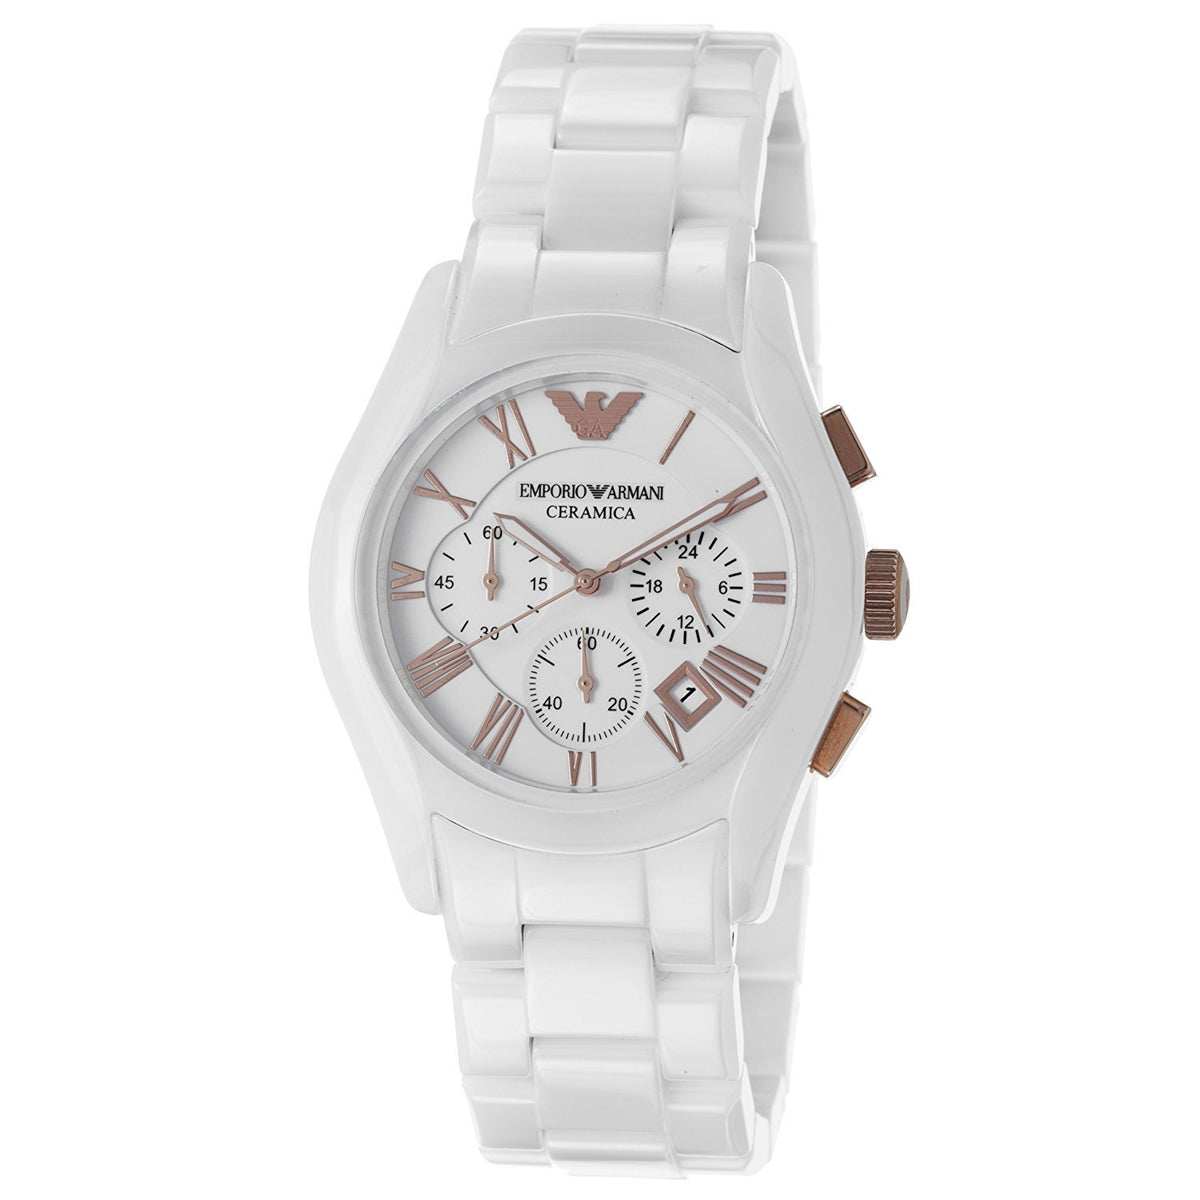 Emporio Armani Ceramic White Watch 